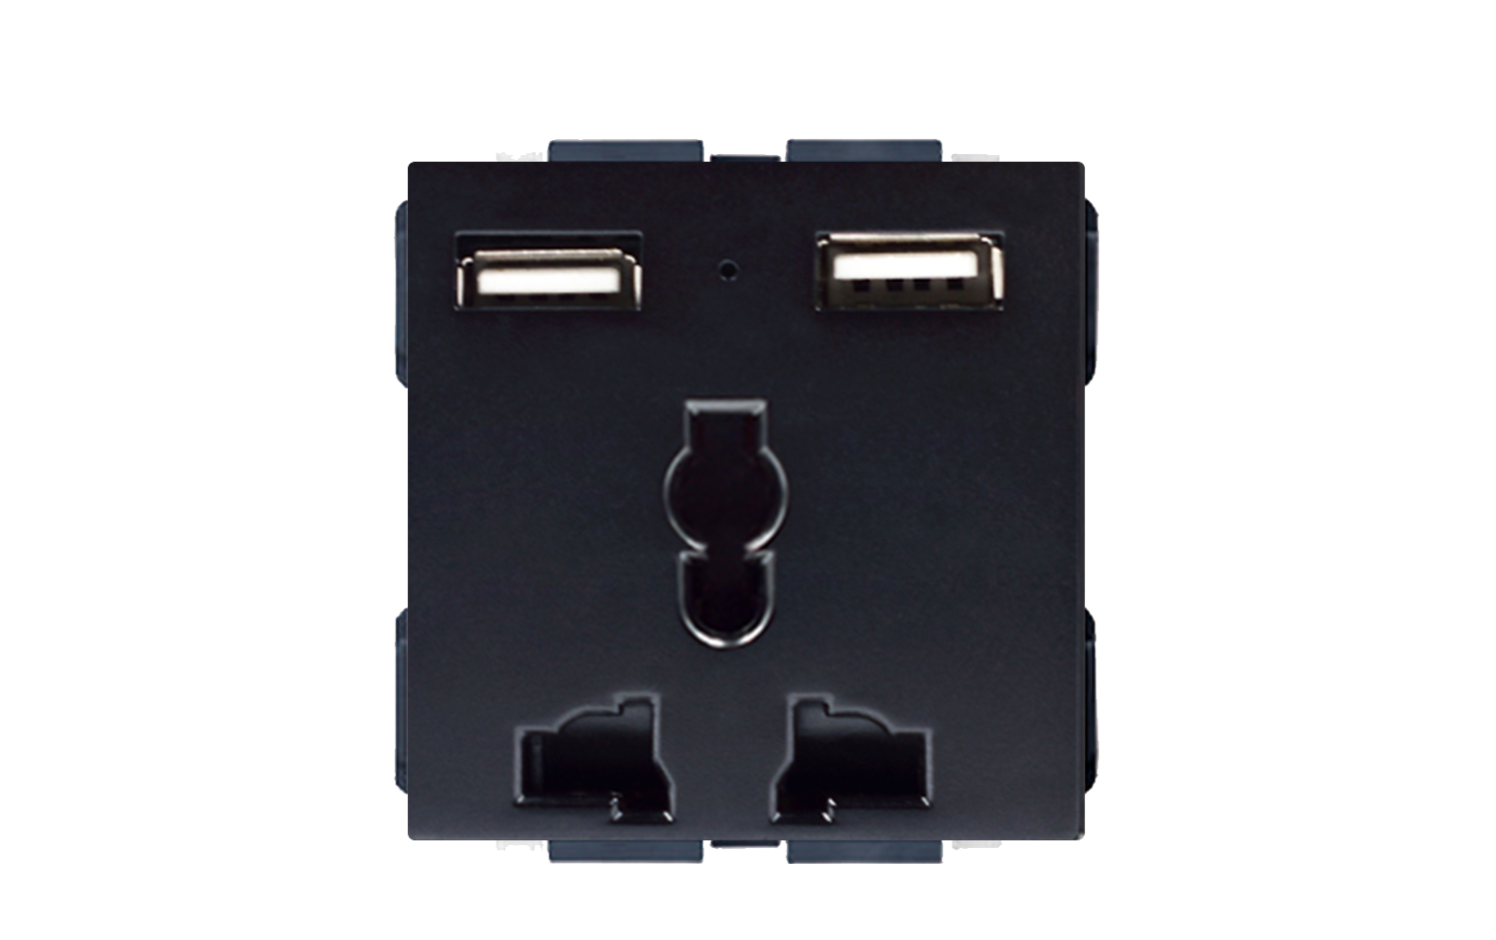 3 Pin'li Evrensel 2 USB Şarj Cihazlı Priz - Siyah